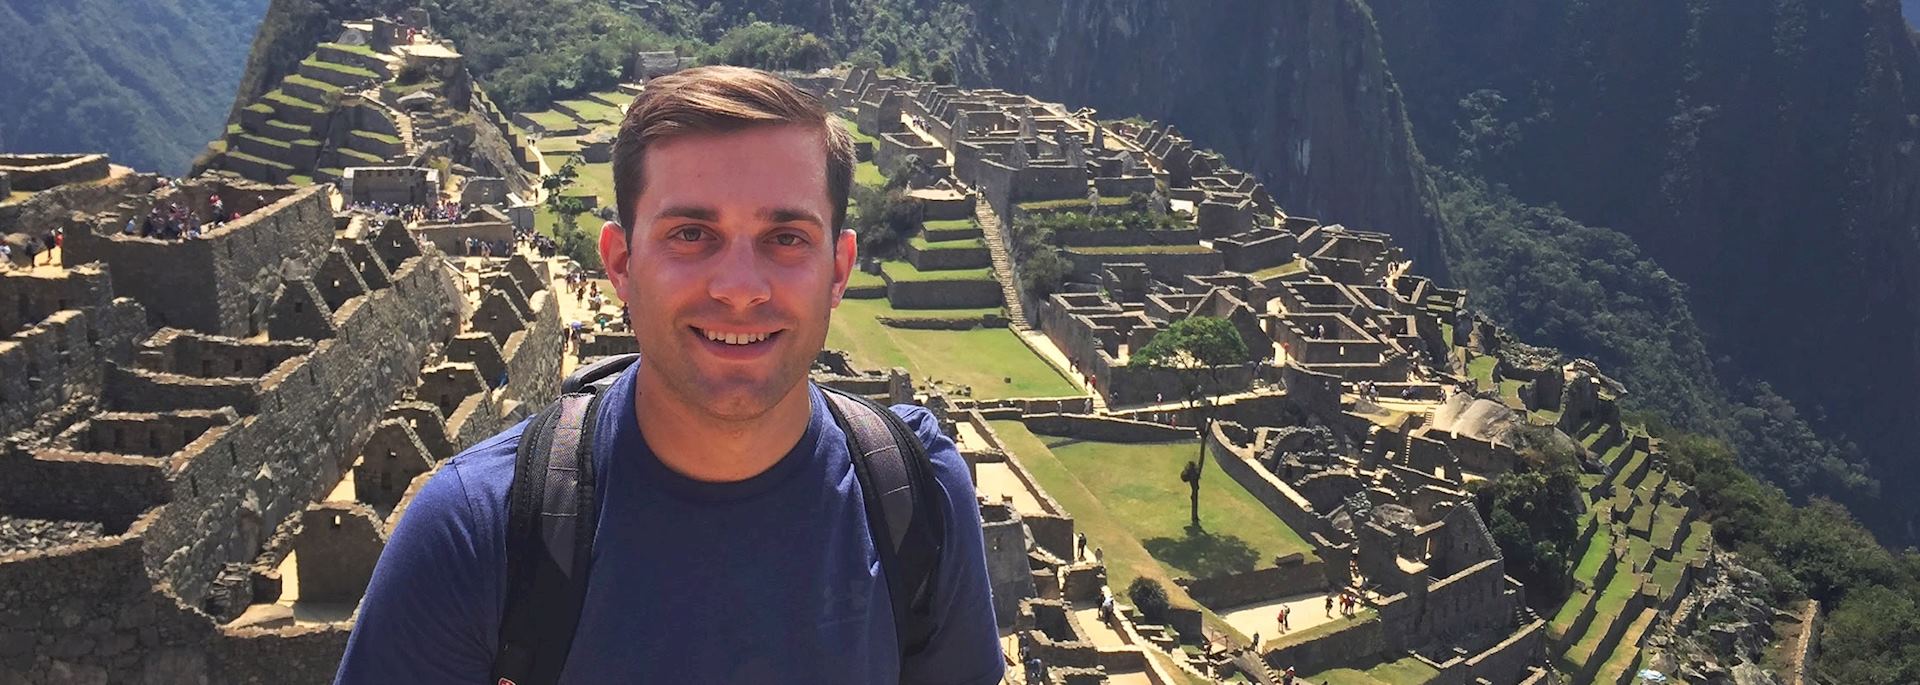 Ryan at Machu Picchu, Peru